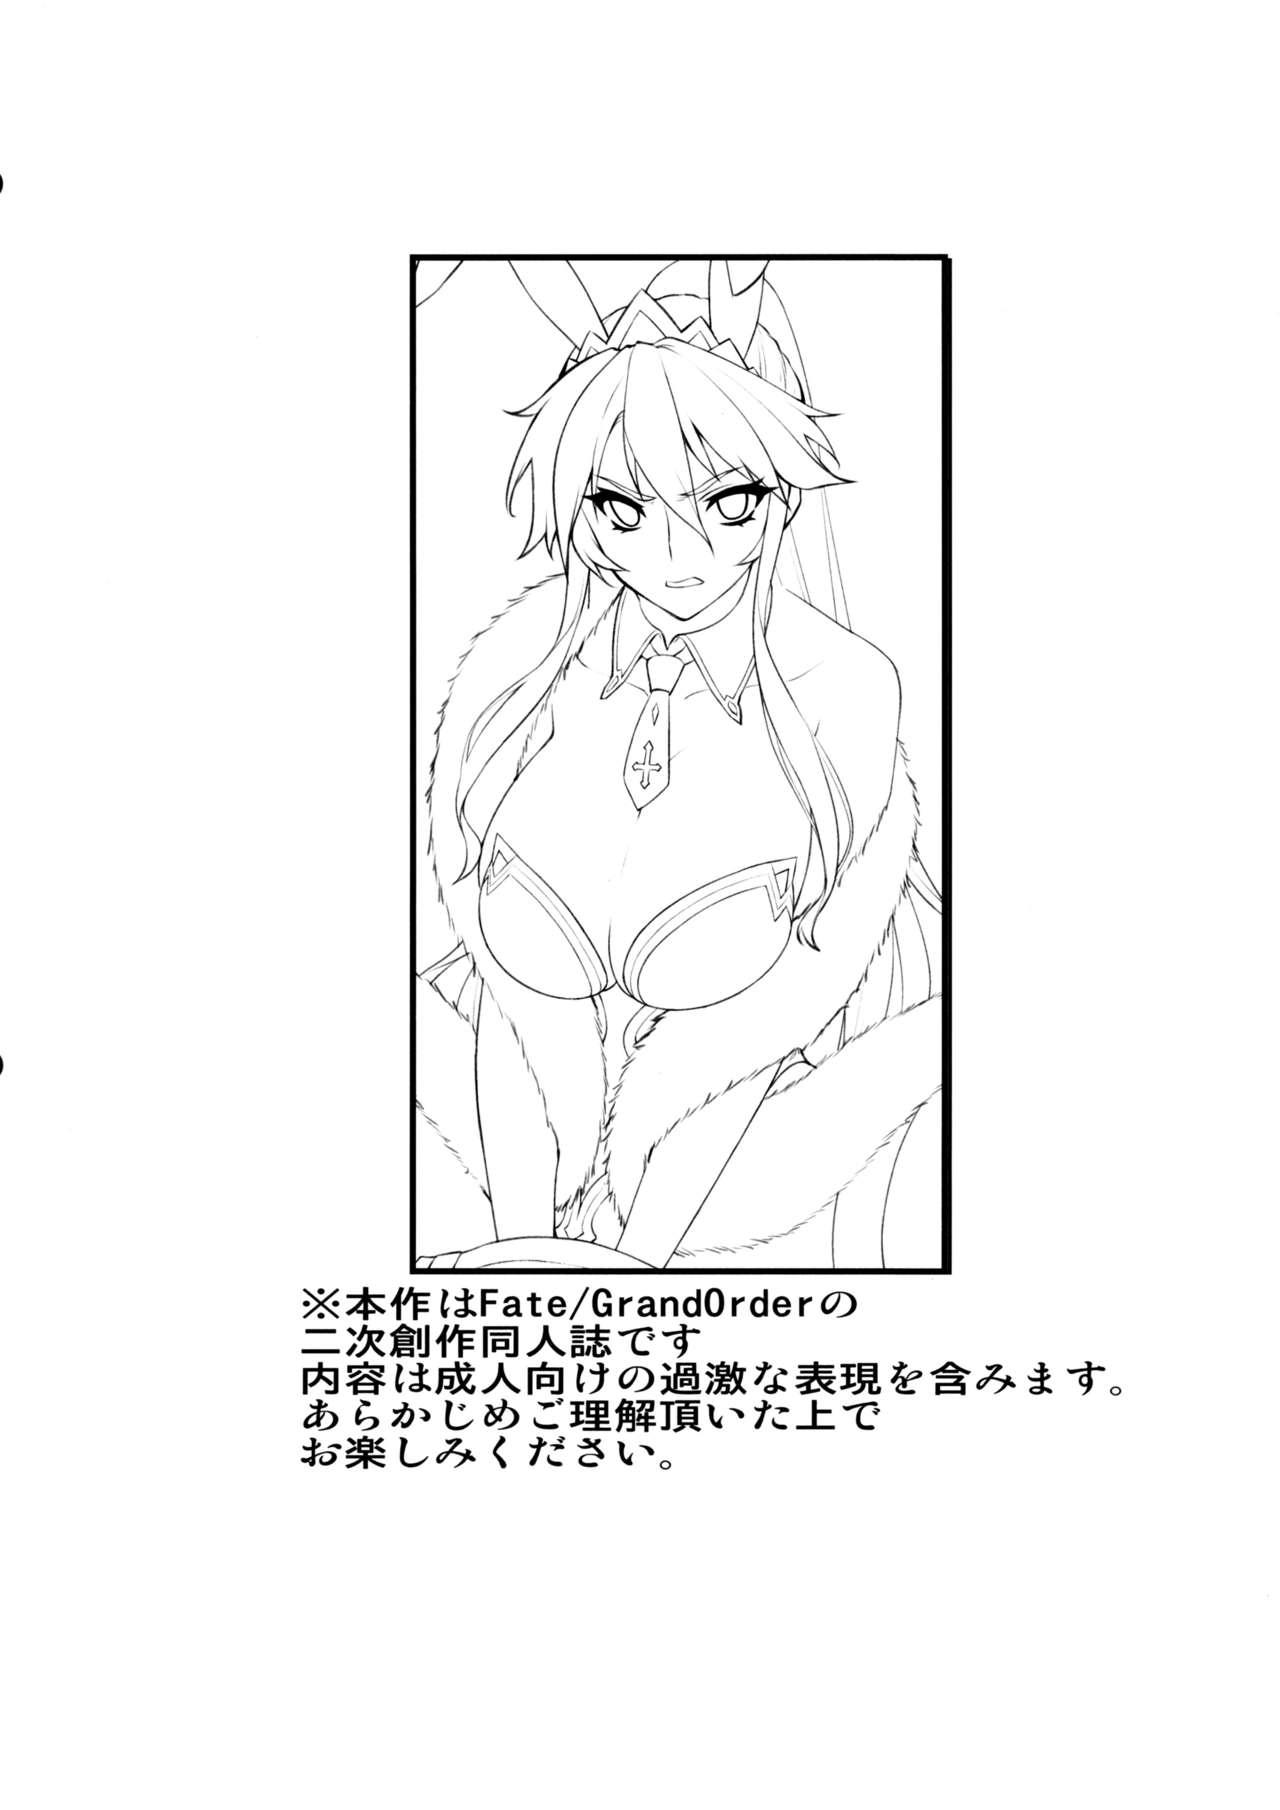 Casada Eikou no Rakujitsu - Fate grand order Mistress - Page 2